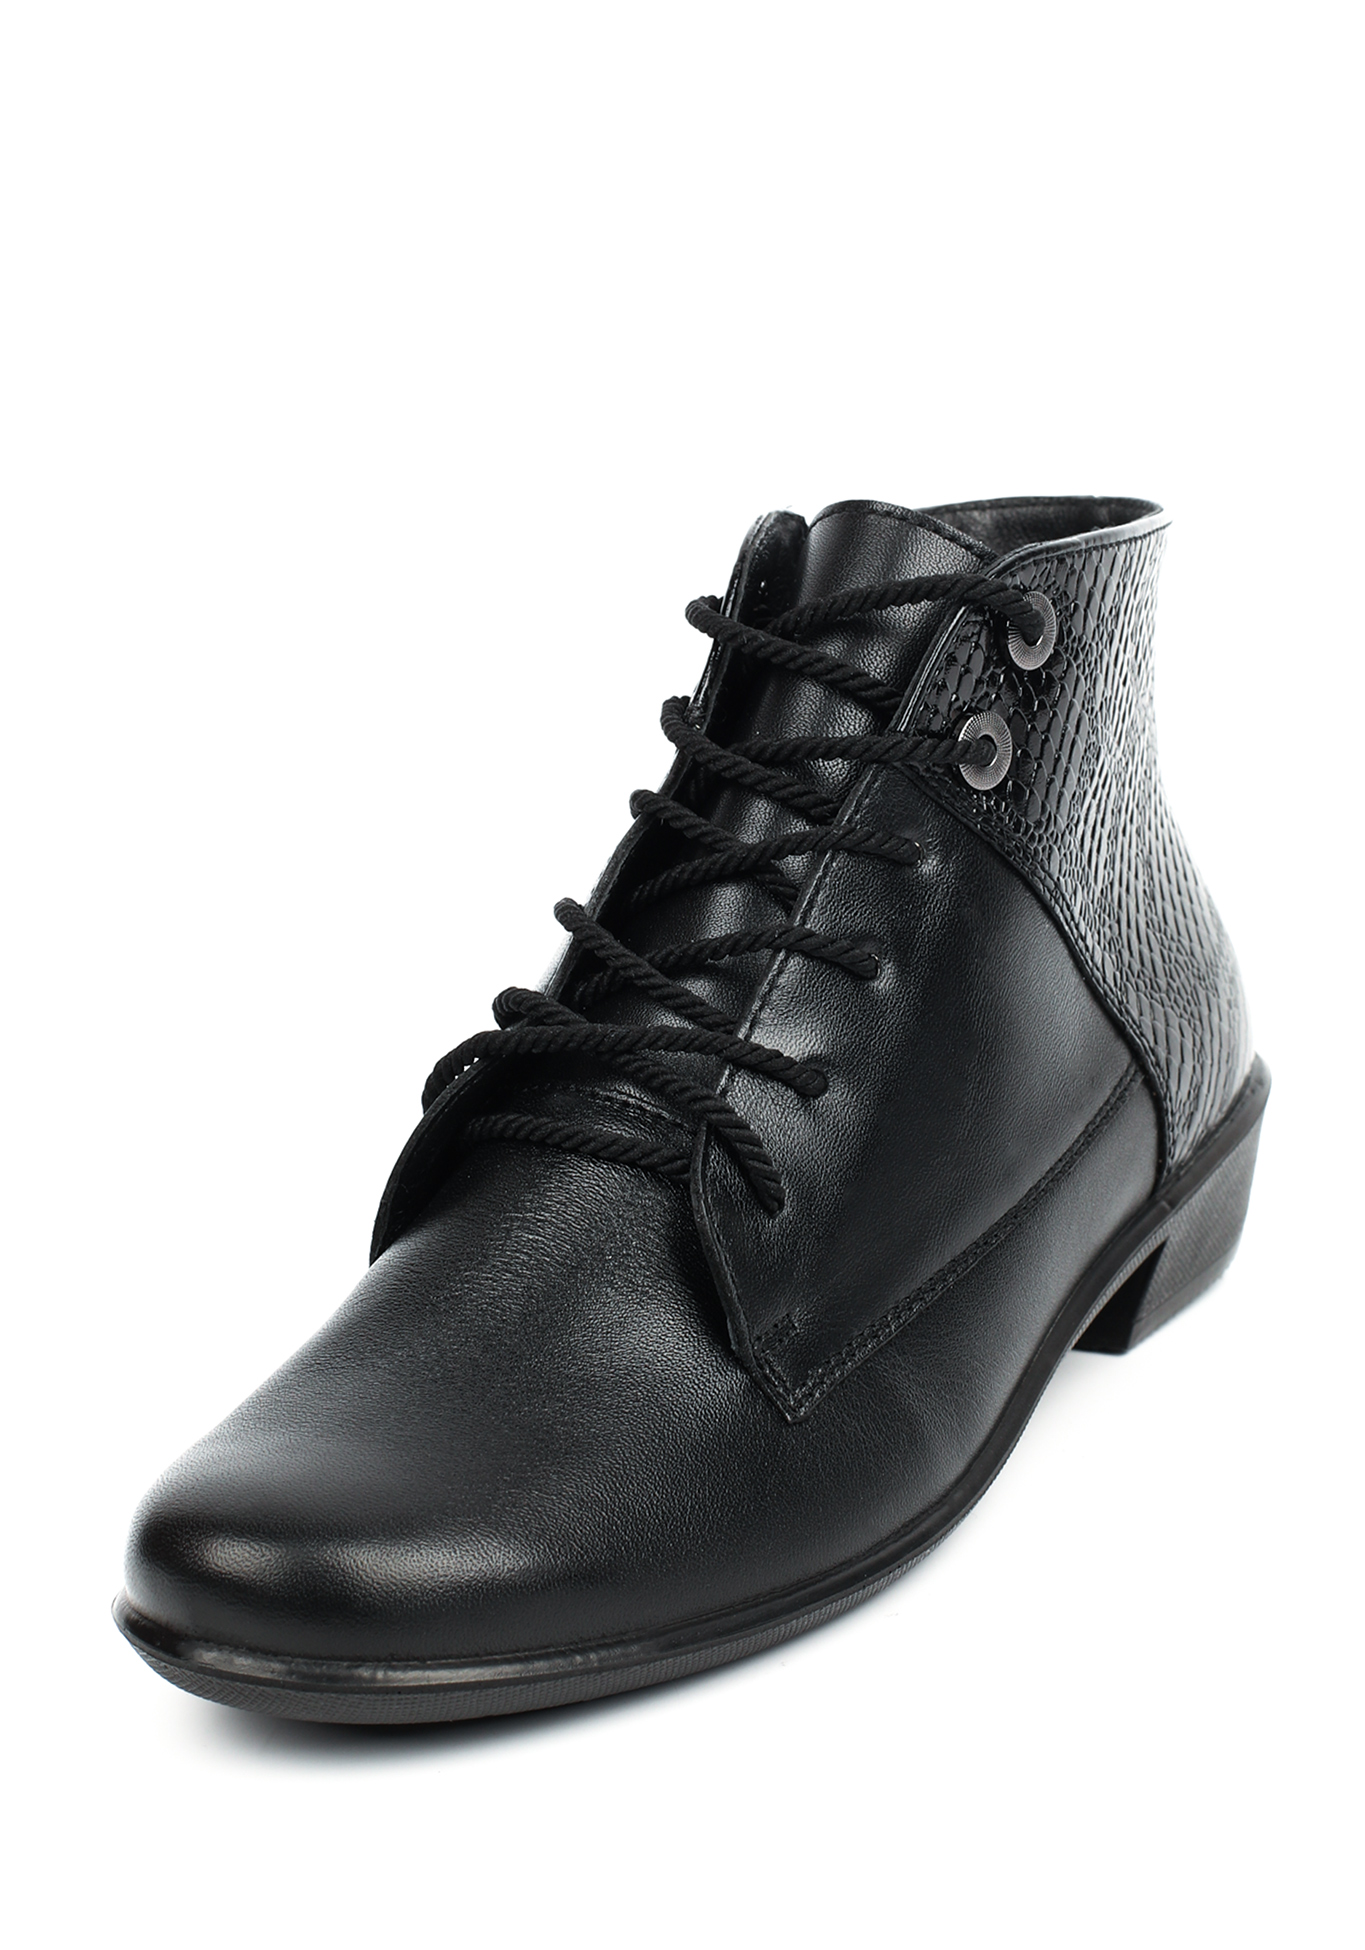 Ботинки женские "Динара" Marko, размер 37, цвет черный - фото 1